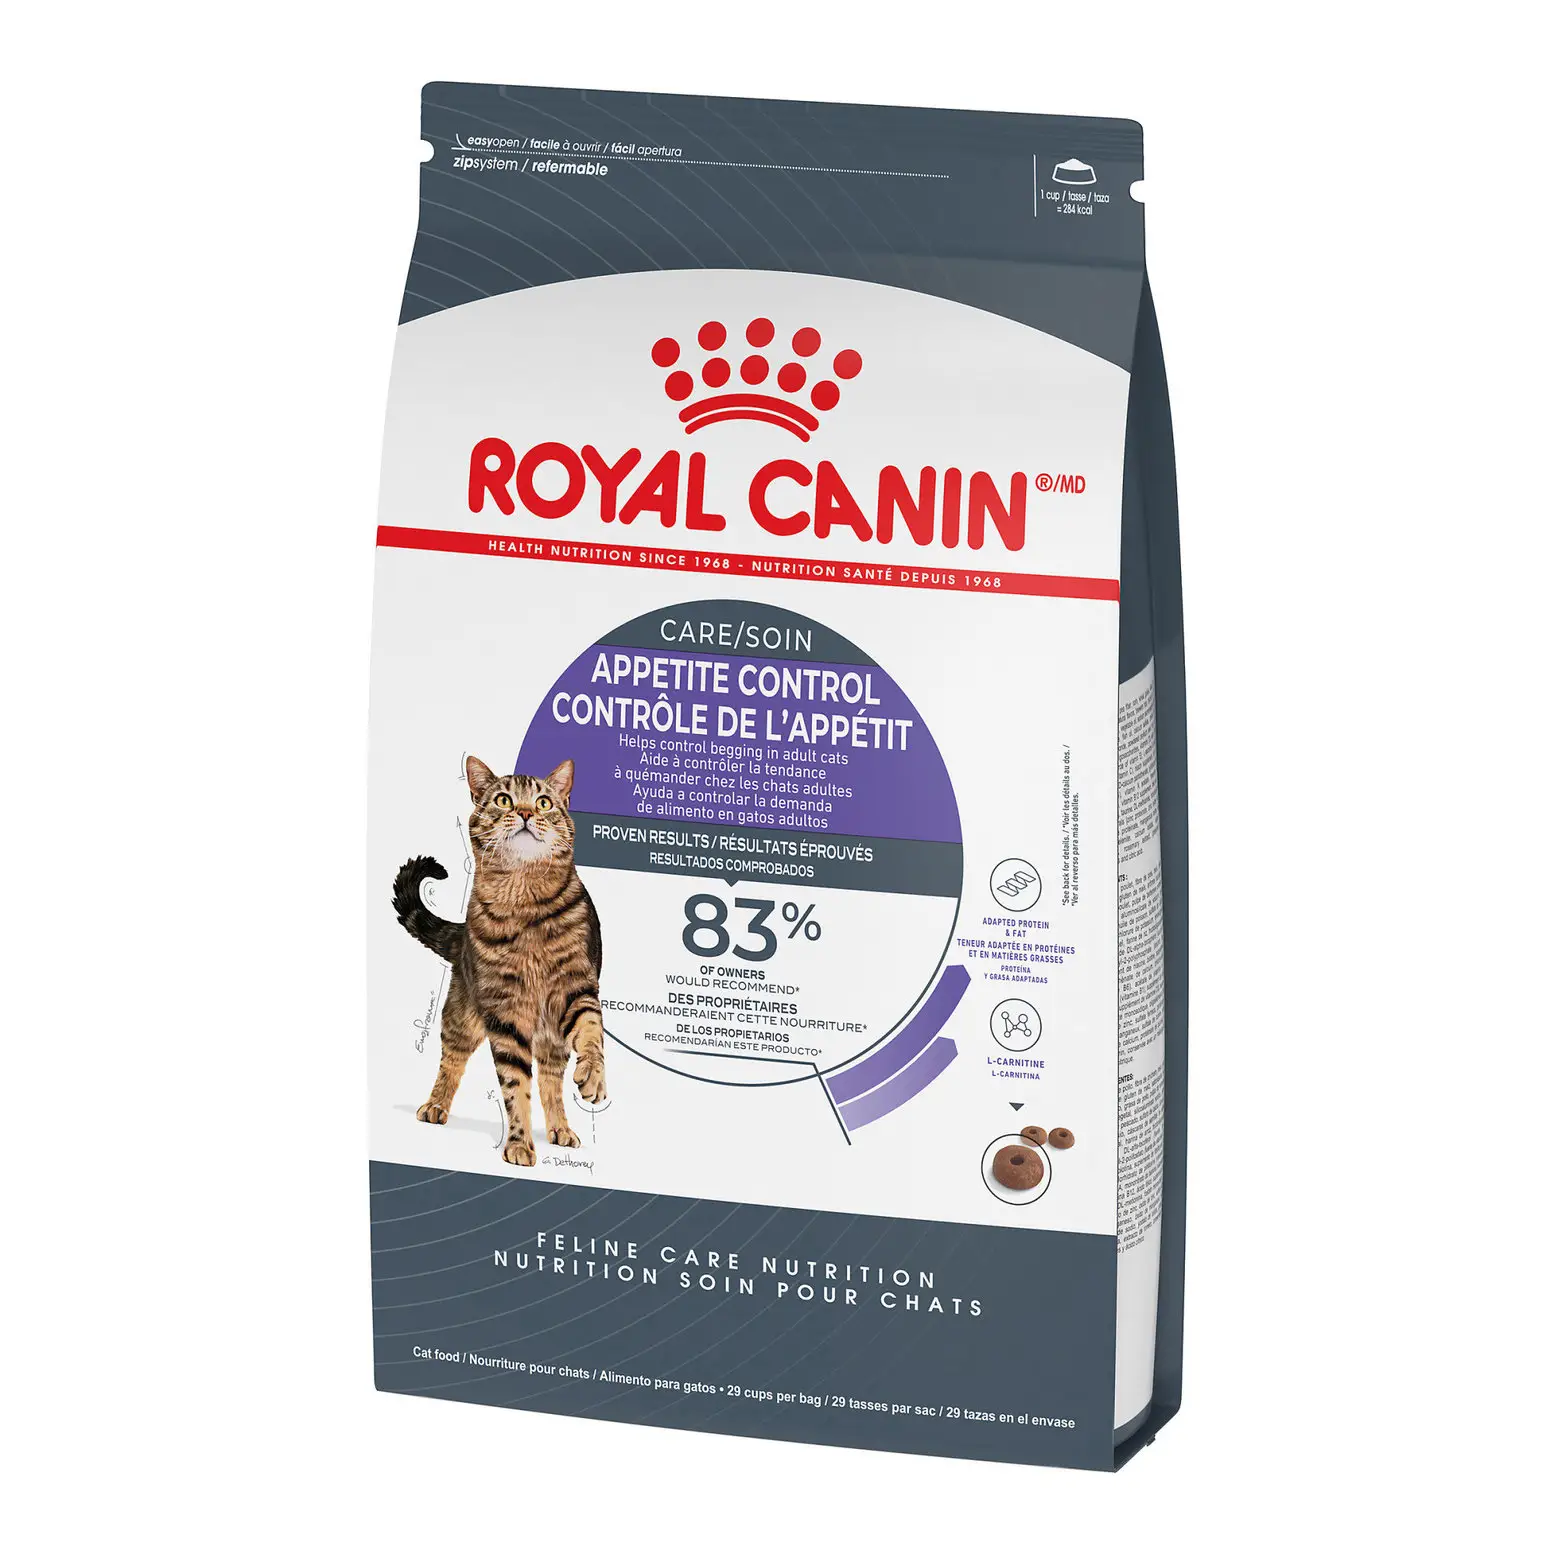 Kraliyet Canin köpek maması/kedi maması/en kaliteli evcil hayvan gıda kraliyet Canin kutular ve satılık çanta